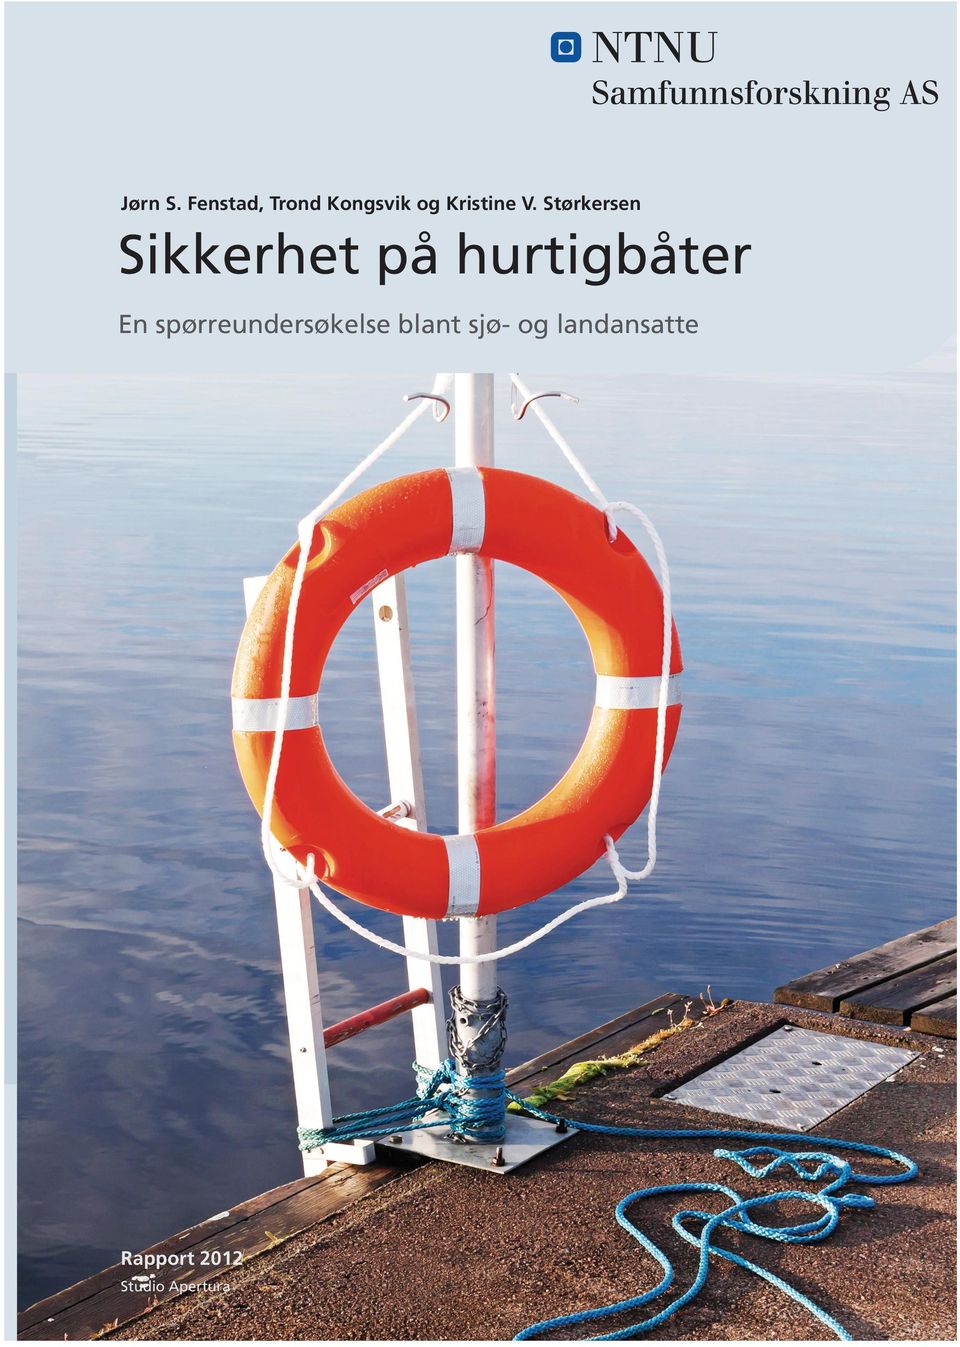 978 82 7570 314 7 (trykk) ISBN 978 82 7570 315-4 (web) Sikkerhet på hurtigbåter Tel: 73 59